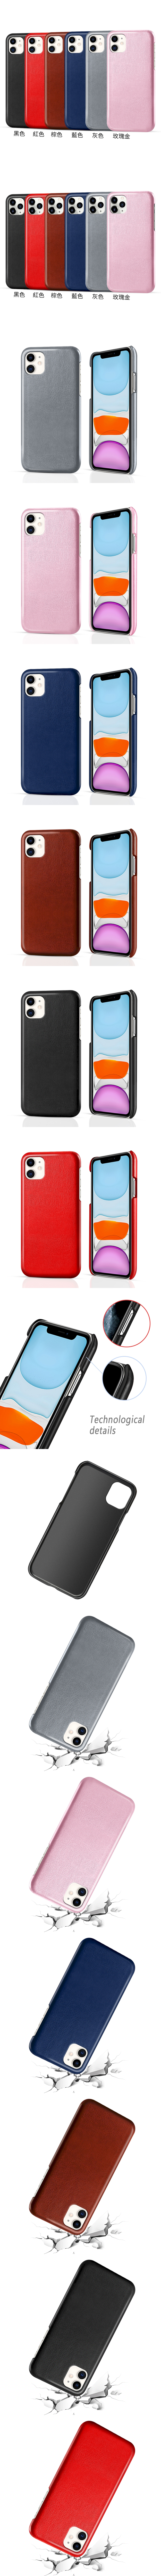 皮革保護殼(PLAIN) - 牛皮仿真皮紋單色素色背蓋油蠟感保護套手機殼手機套